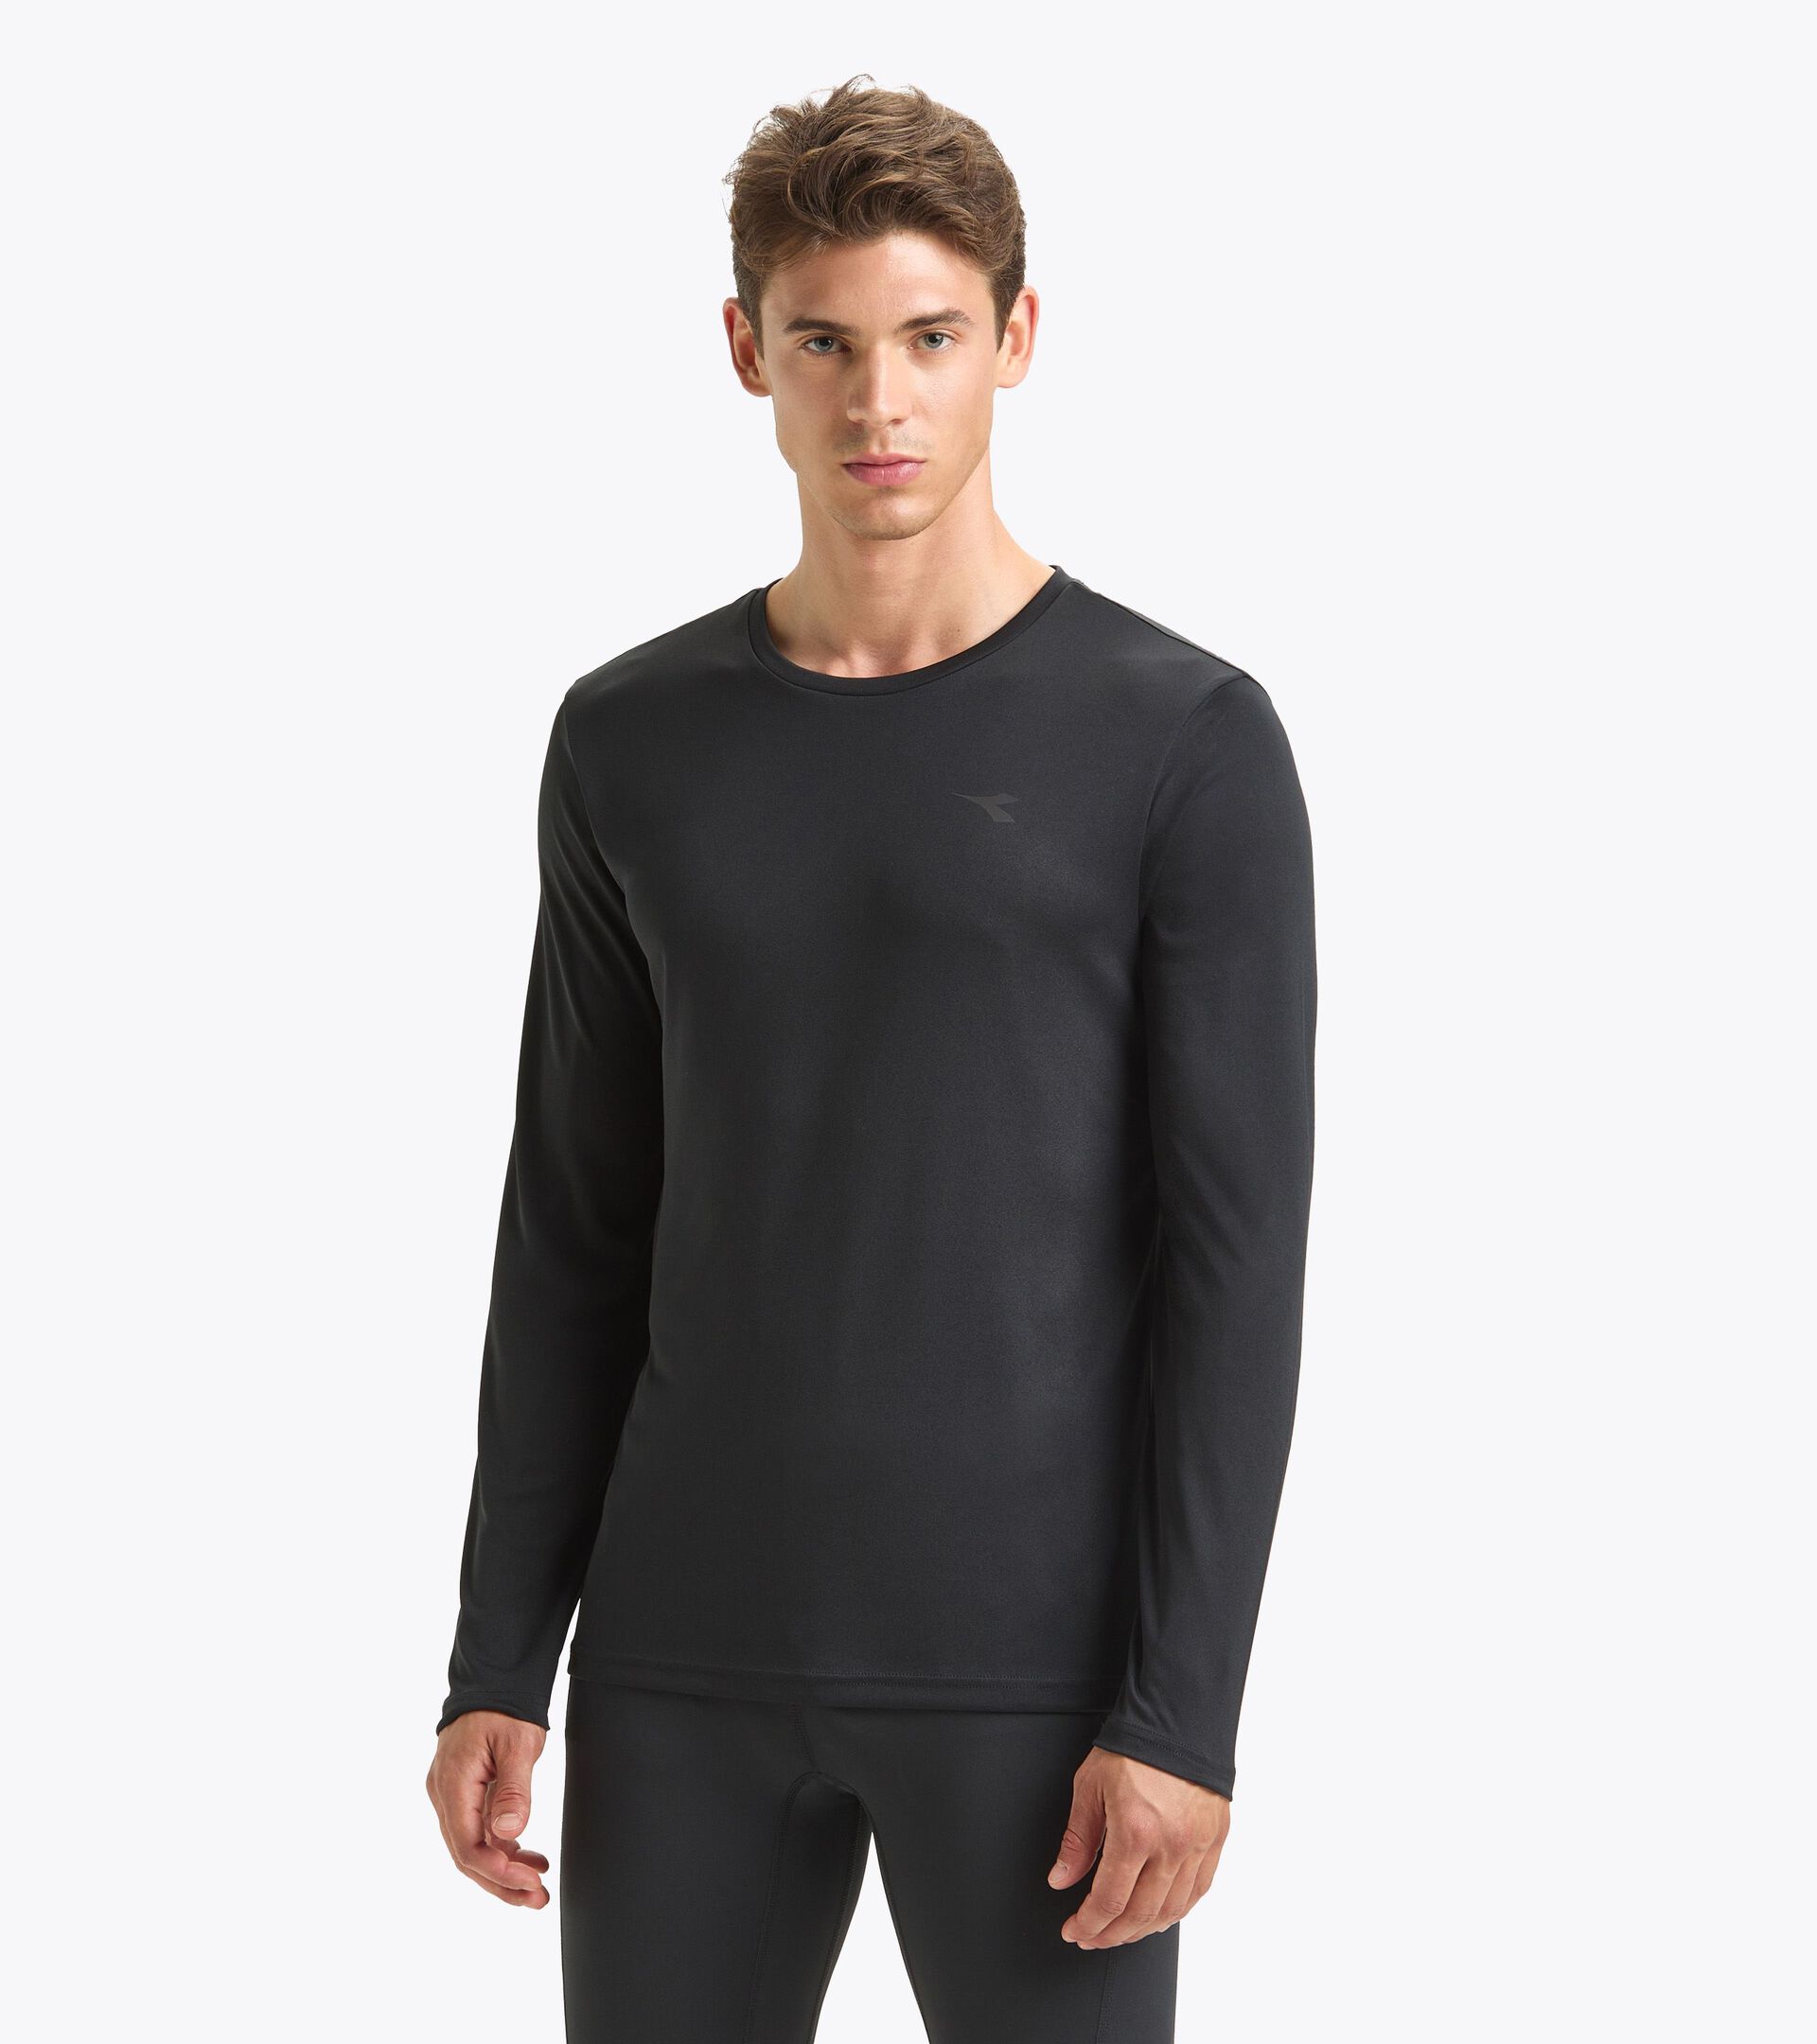 LS T-SHIRT RUN Long-sleeved shirt - Men - Diadora Online Store US